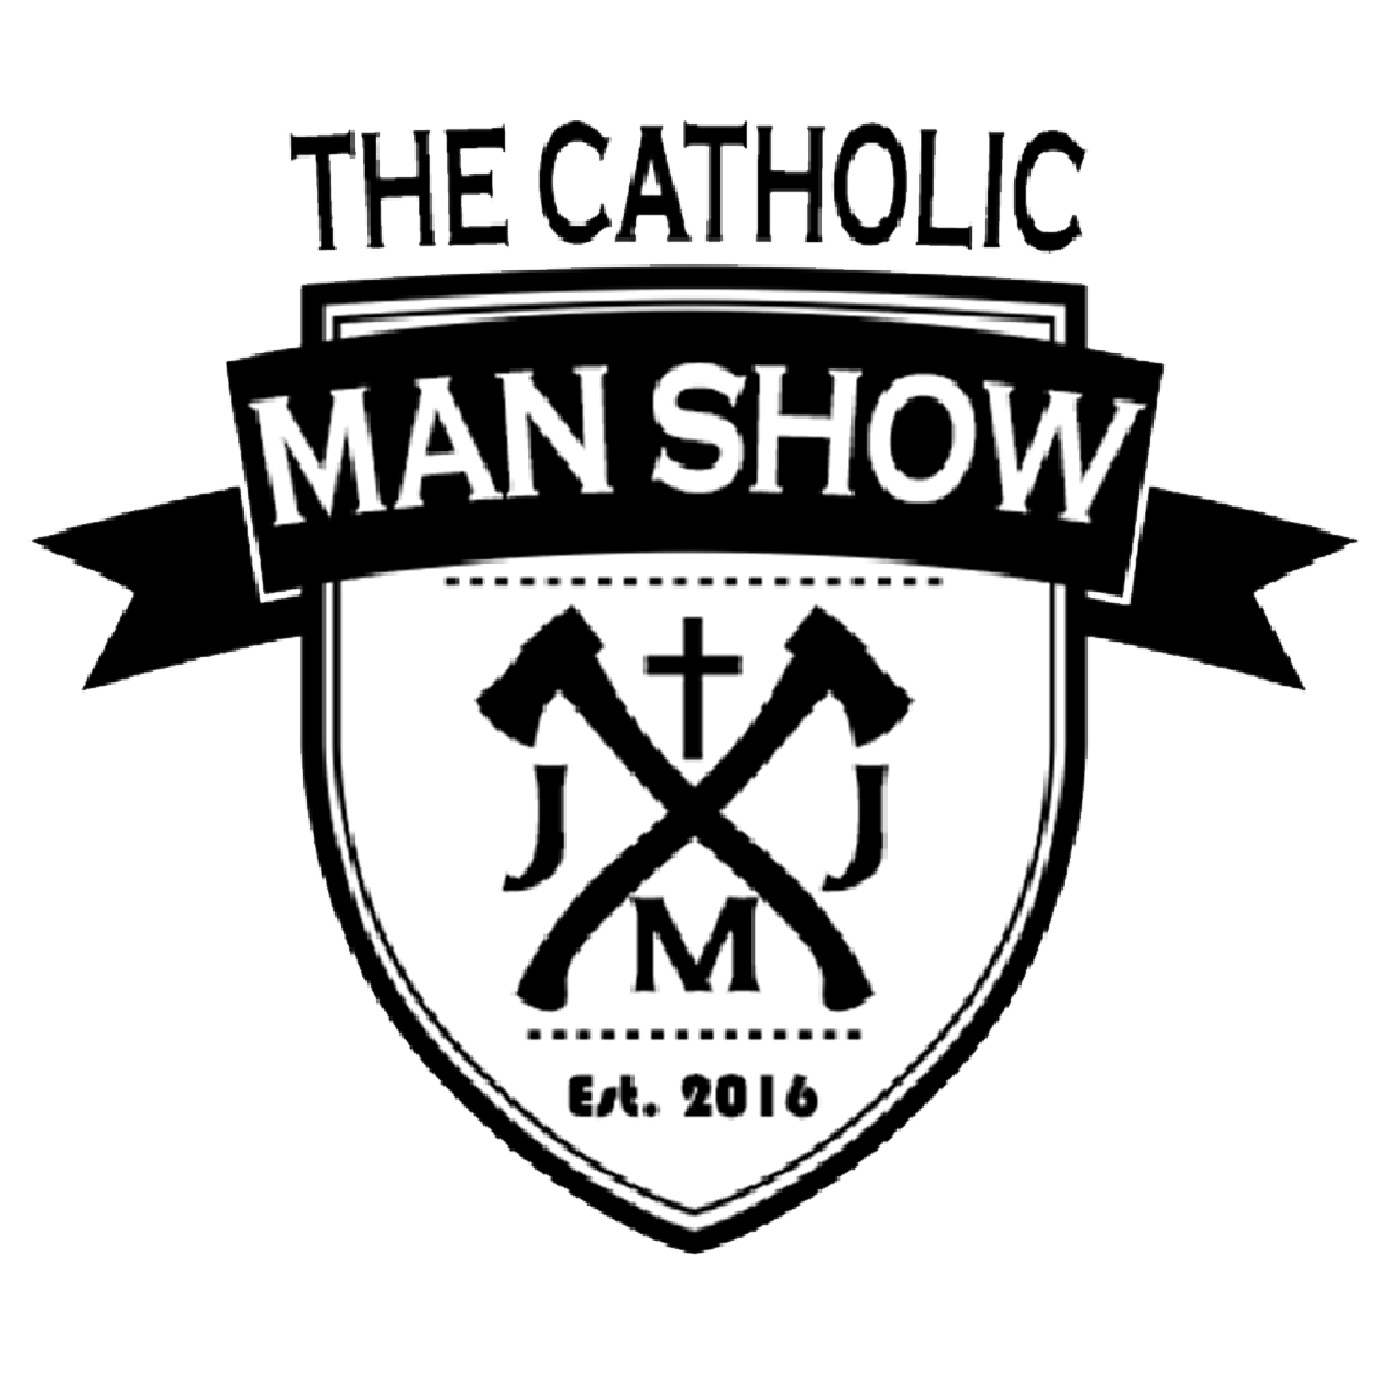 The Catholic Man Show Episode 9: Localism